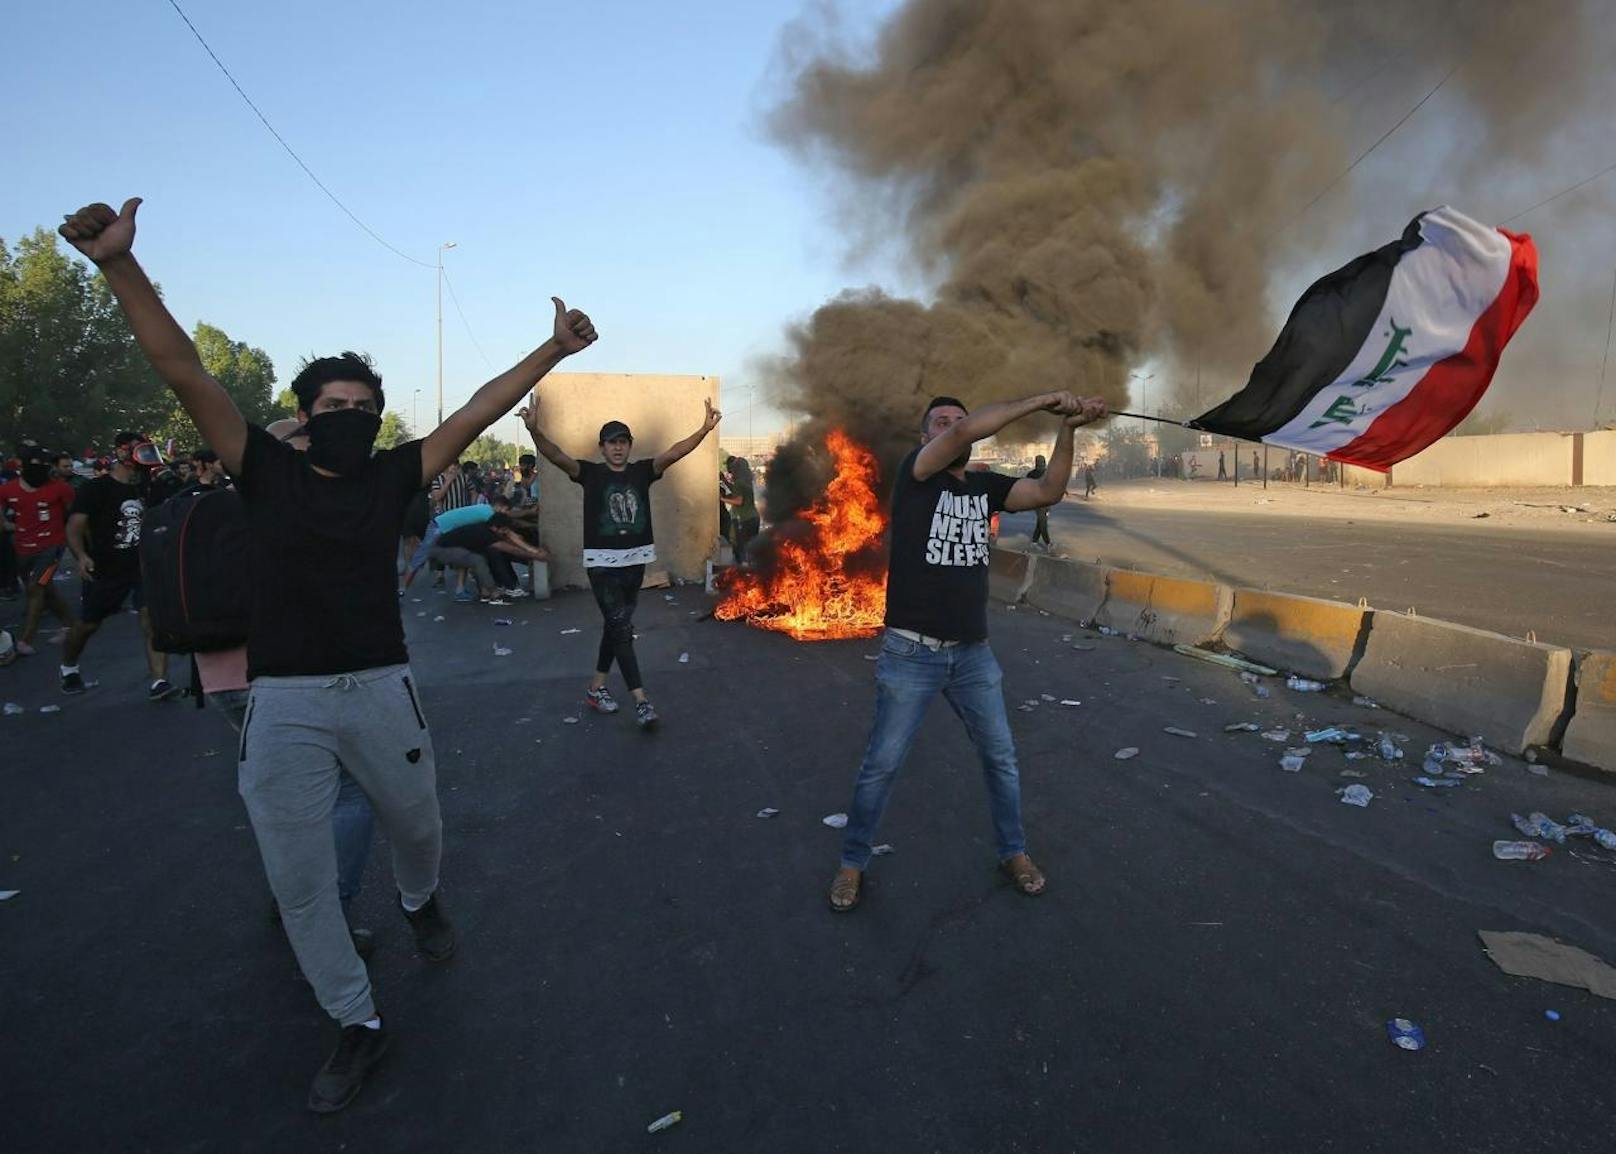 Sicherheitskräfte gingen mit Tränengas und Schüssen gegen die Demonstranten vor. Mehr als 90 Menschen starben.